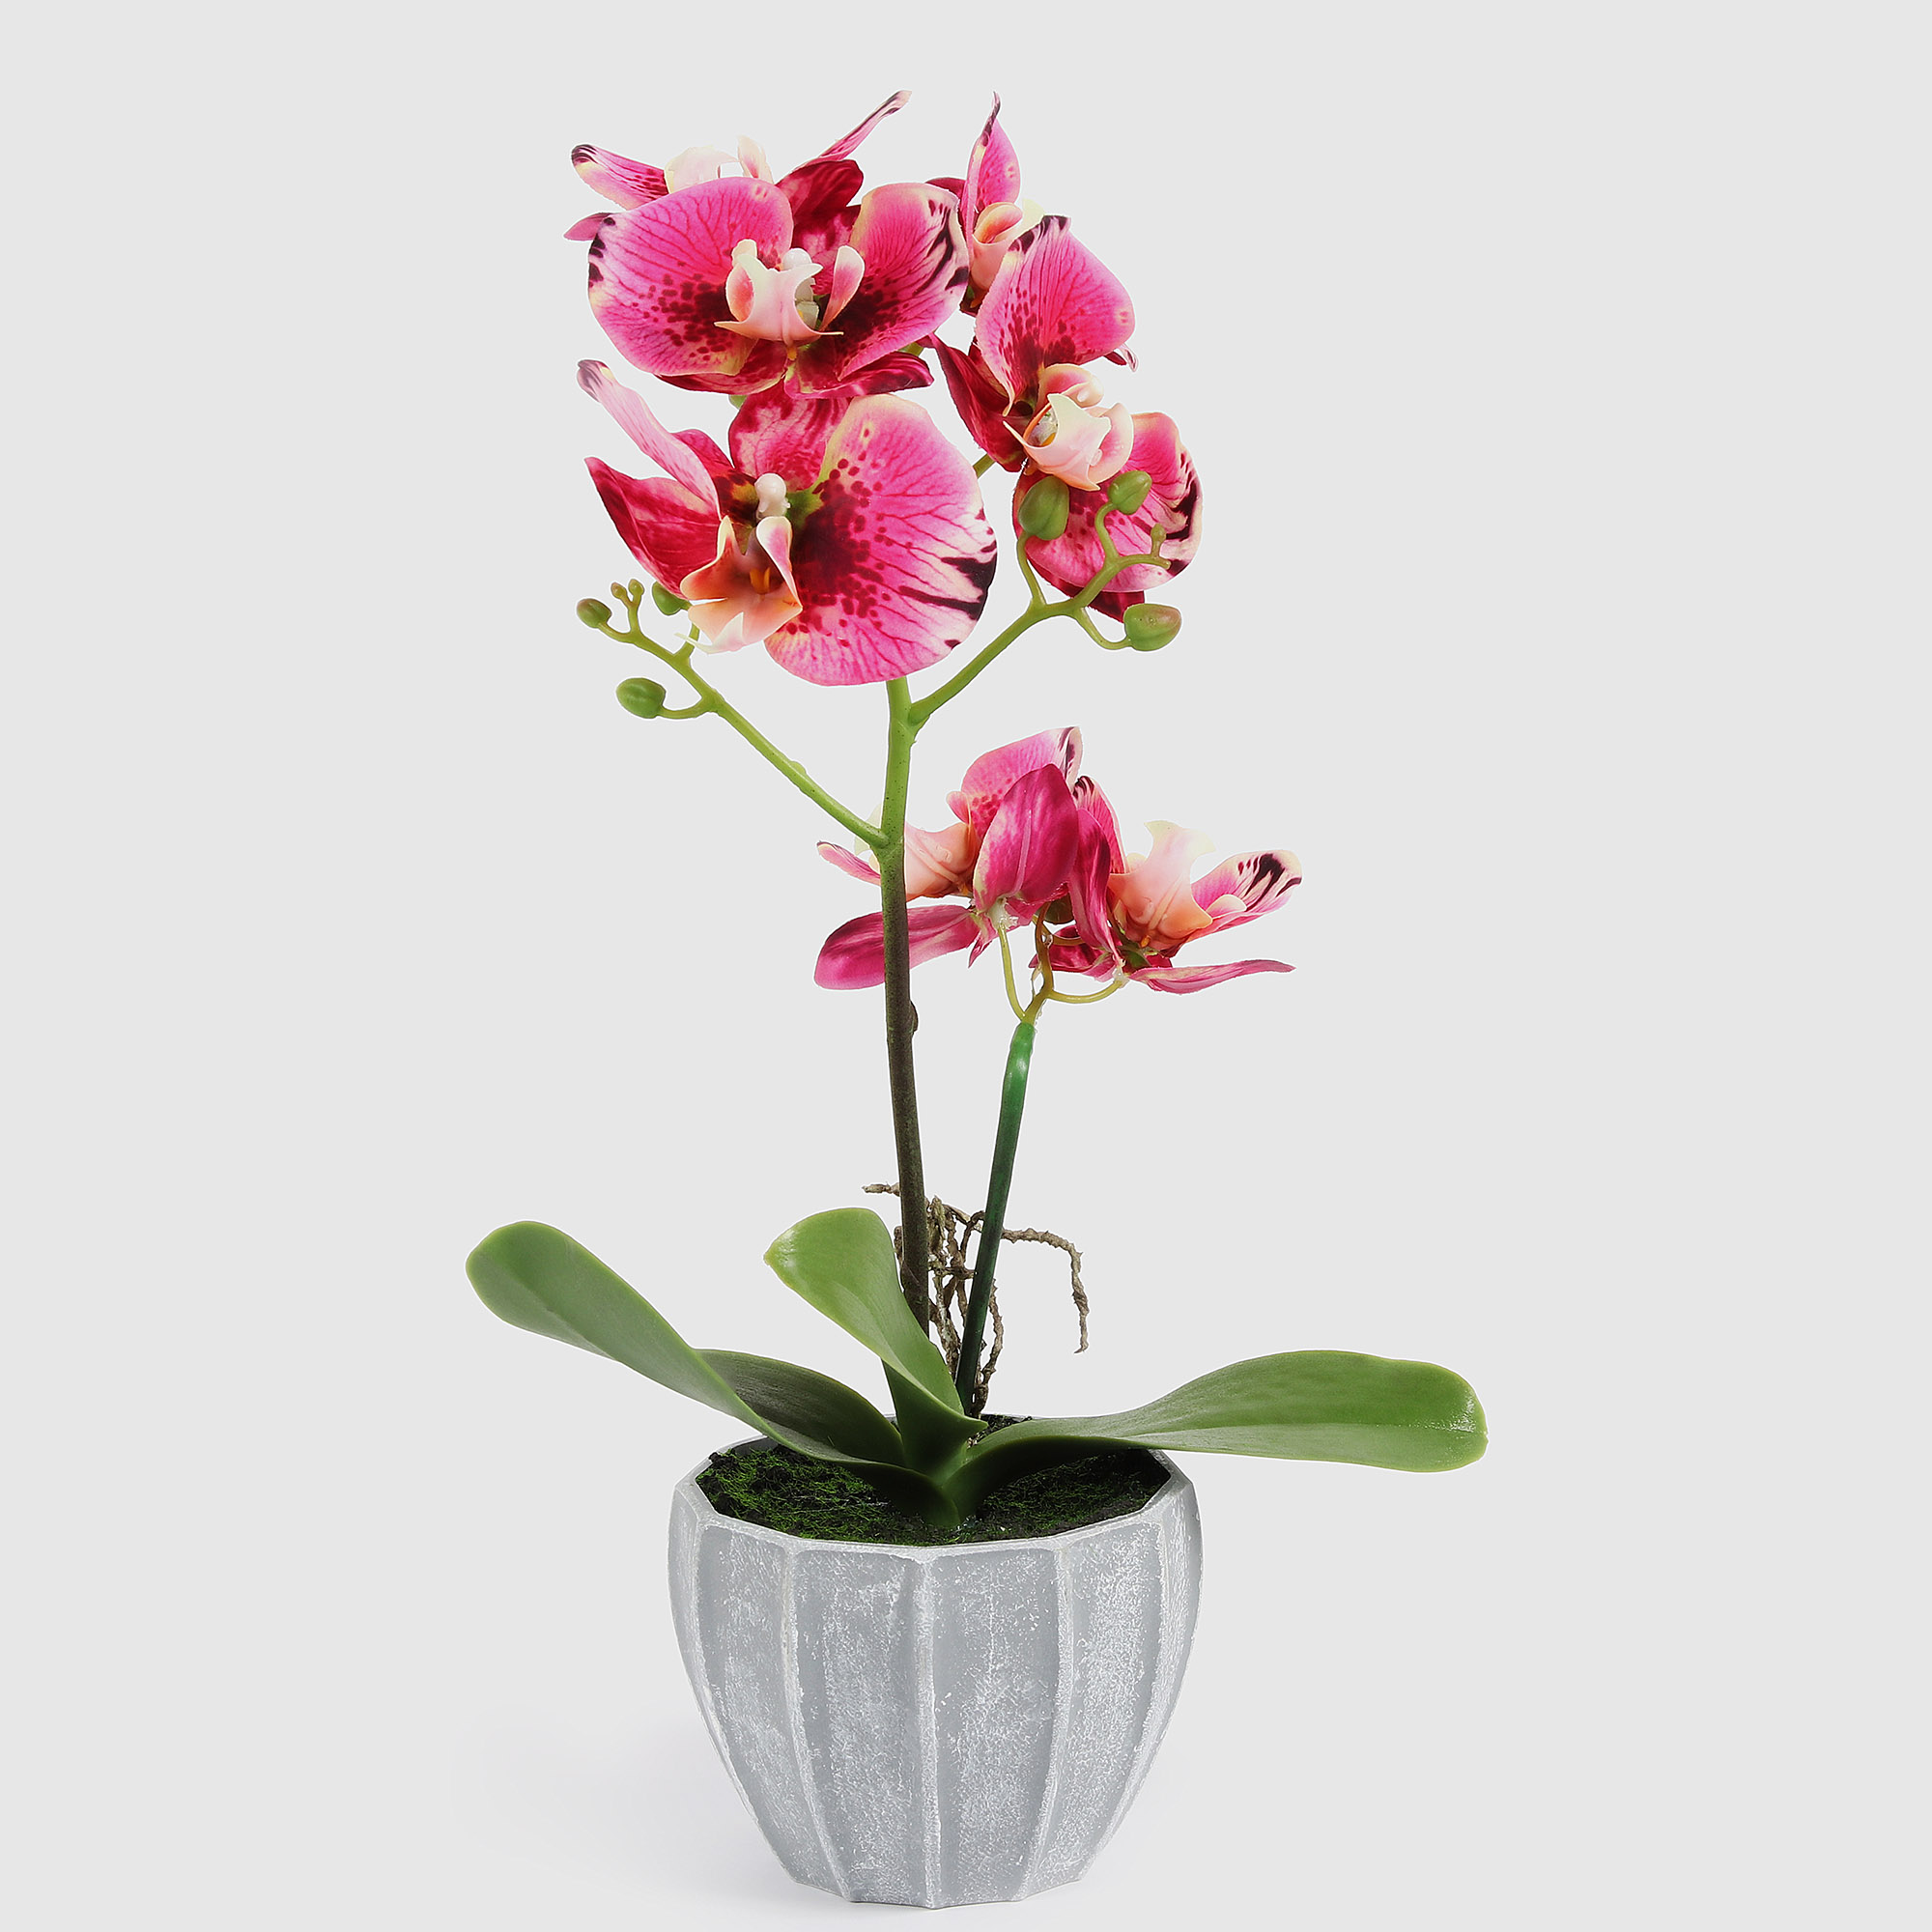 Цветок искусственный Fuzhou Light в горшке орхидея тигровая 2 цвета, 40 см